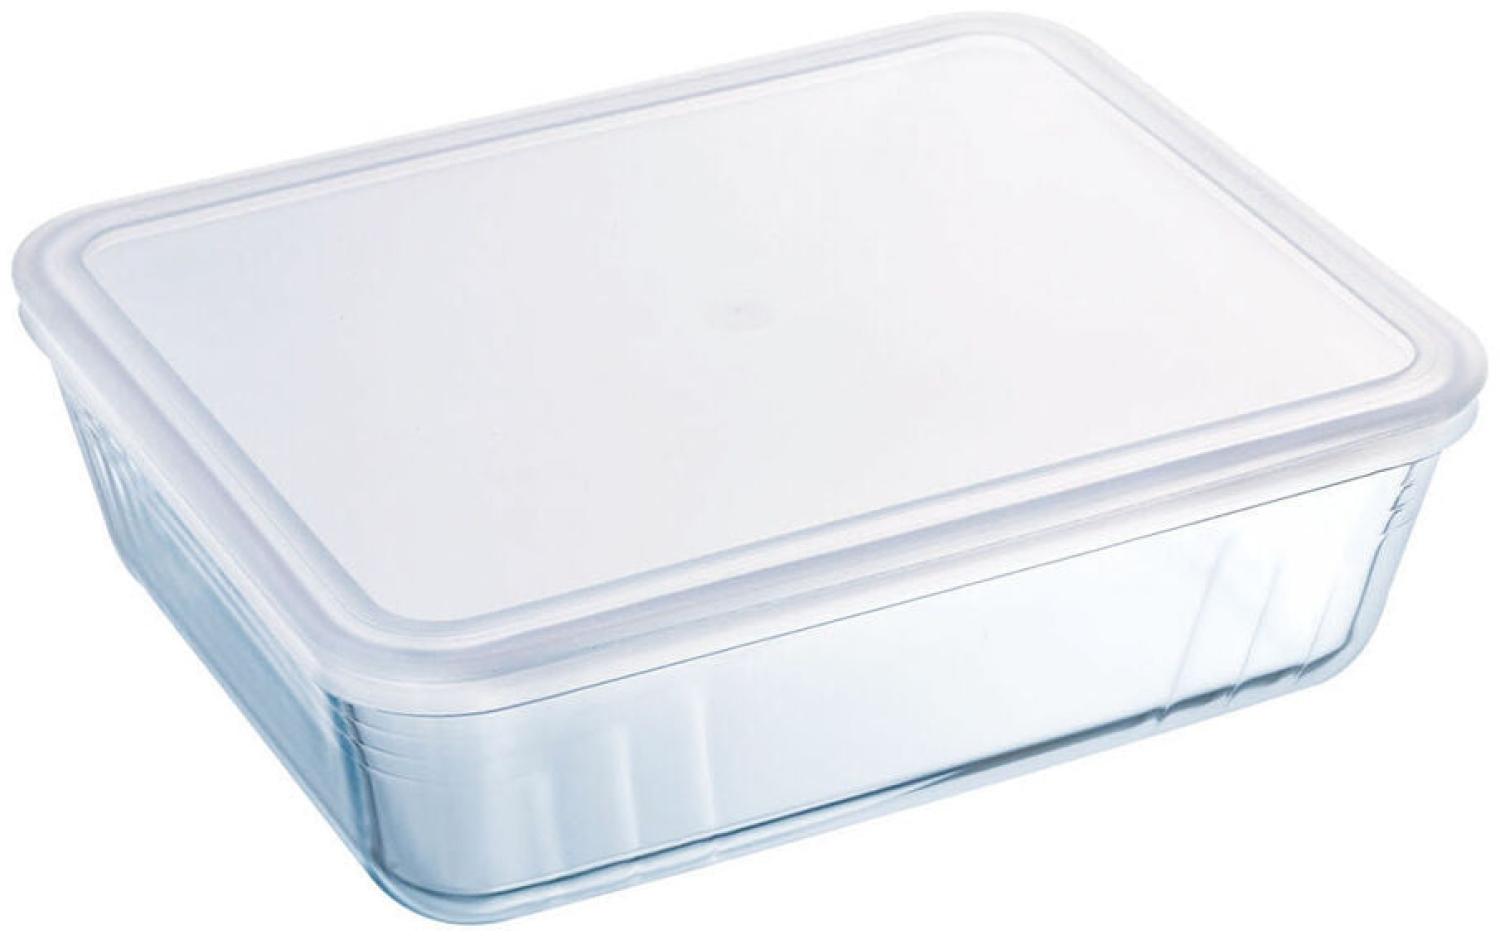 Rechteckige Lunchbox mit Deckel Pyrex Cook&freeze 28 x 23 x 10 cm 4,2 L Durchsichtig Glas Silikon (3 Stück) Bild 1